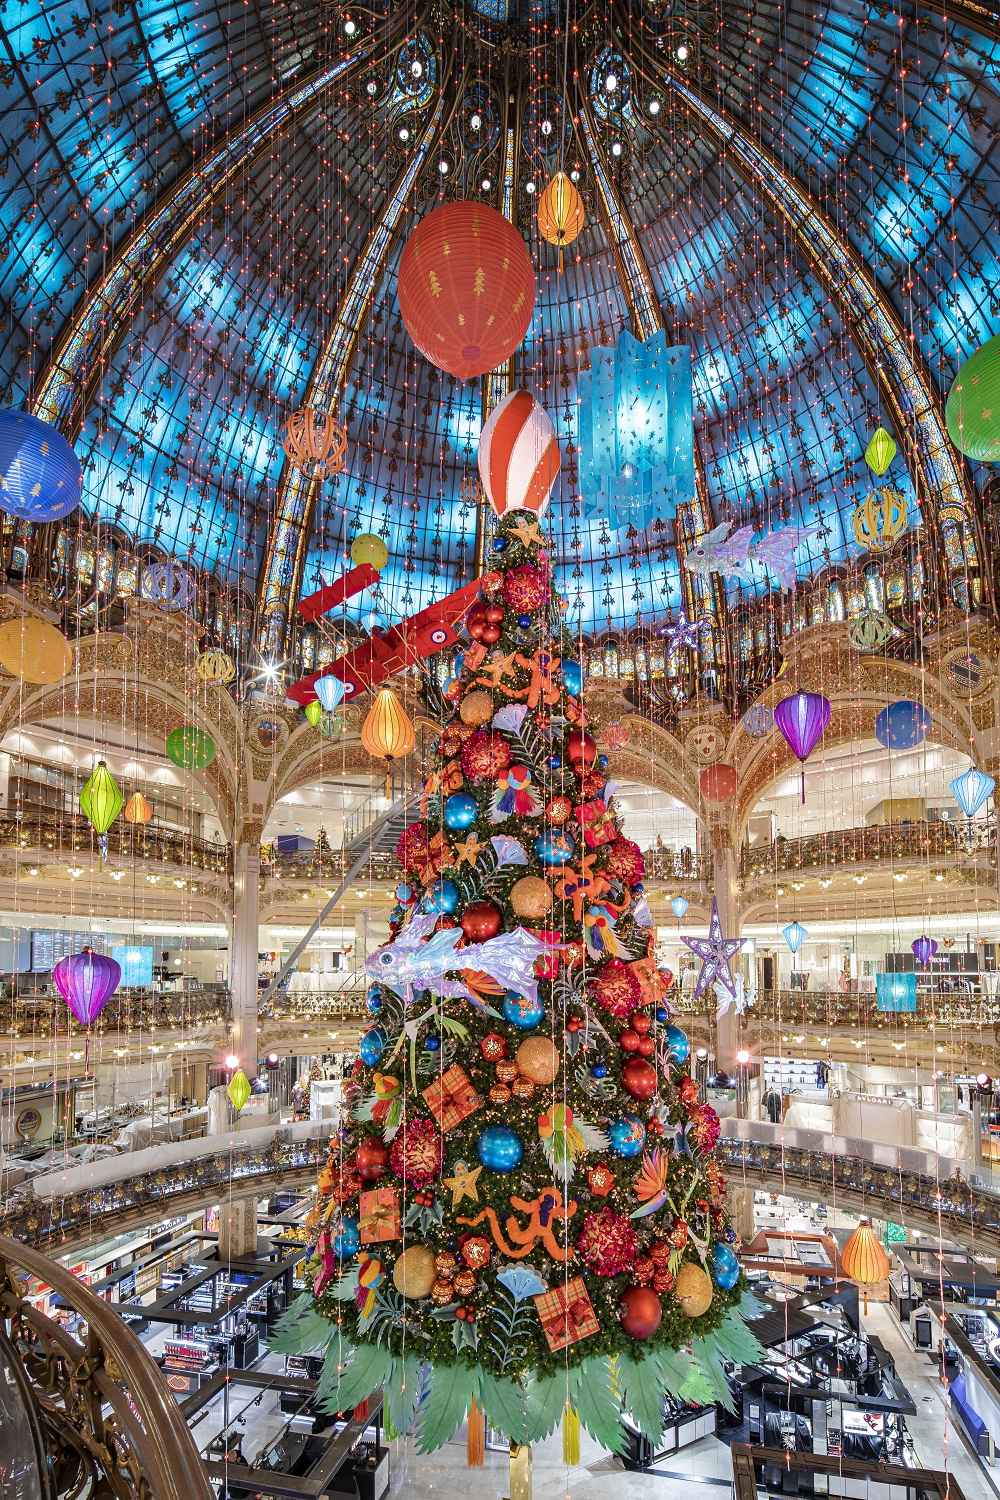 Galeries Lafayette Haussmann inaugura decoração natalina -